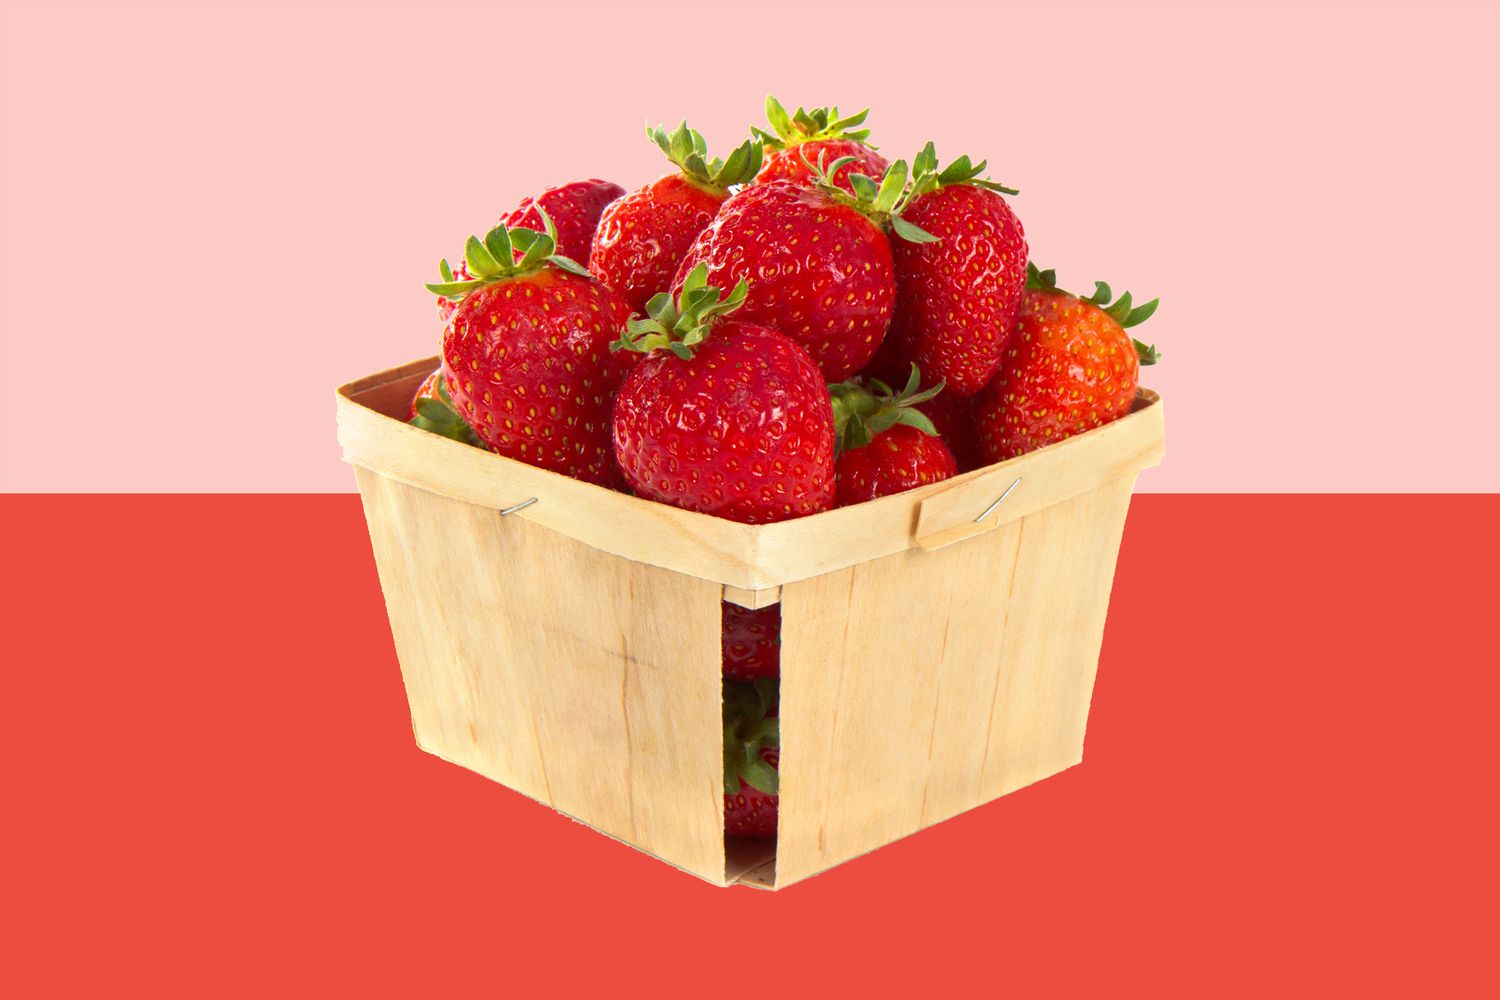 Si está considerando una foto de almacenamiento a largo plazo en un recipiente de madera, puede ahorrar fresas en el congelador. Si es un congelador, debe establecer los consejos anteriores: